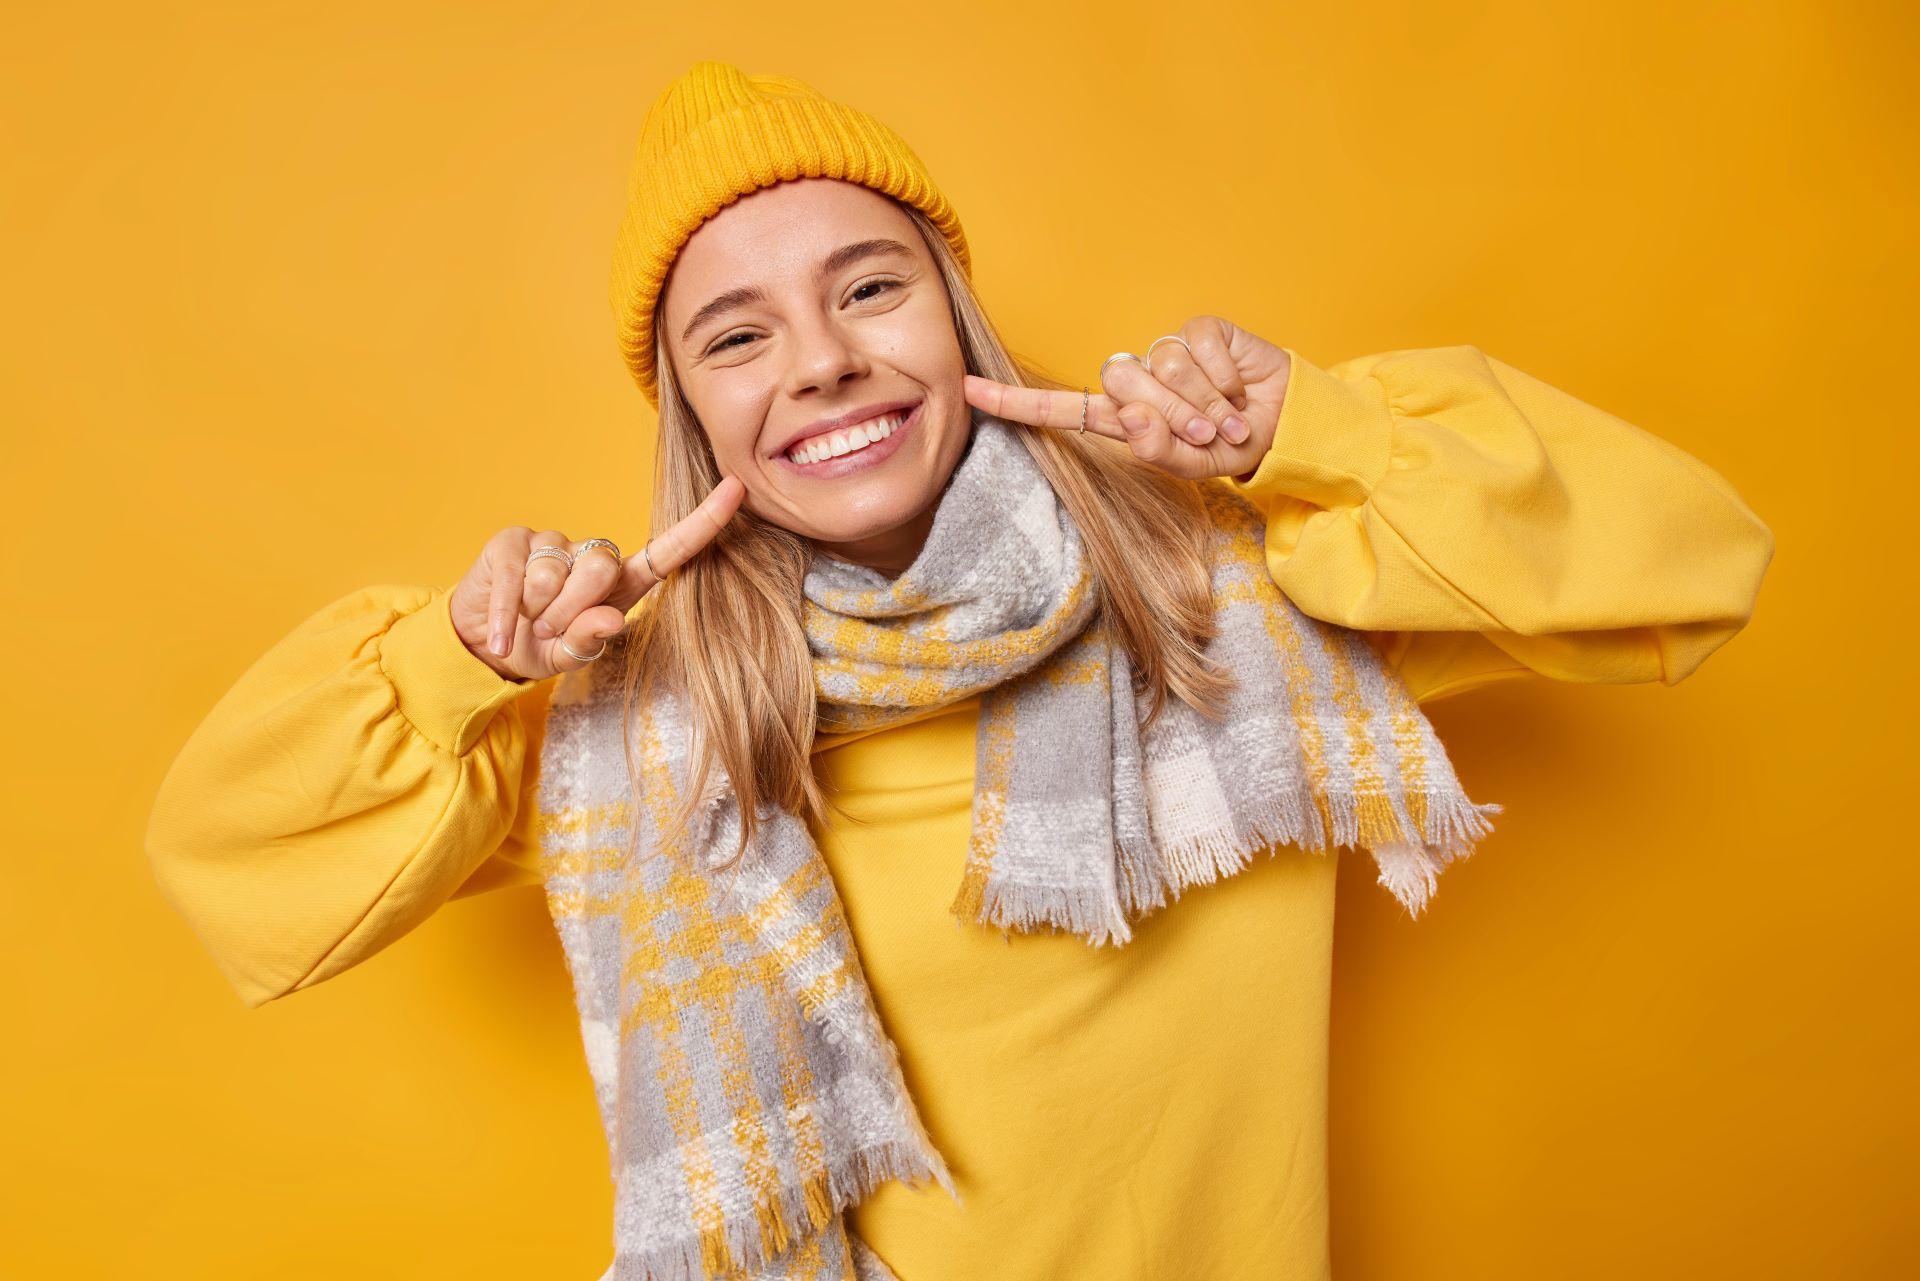 Eine junge Frau lächelt fröhlich in die Kamera und zeigt mit beiden Zeigefingern auf ihre Zähne. Sie trägt eine gelbe Mütze, einen gelben Pullover und einen grauen Schal mit gelbem Muster. Der Hintergrund ist komplett gelb, passend zu ihrer Kleidung.